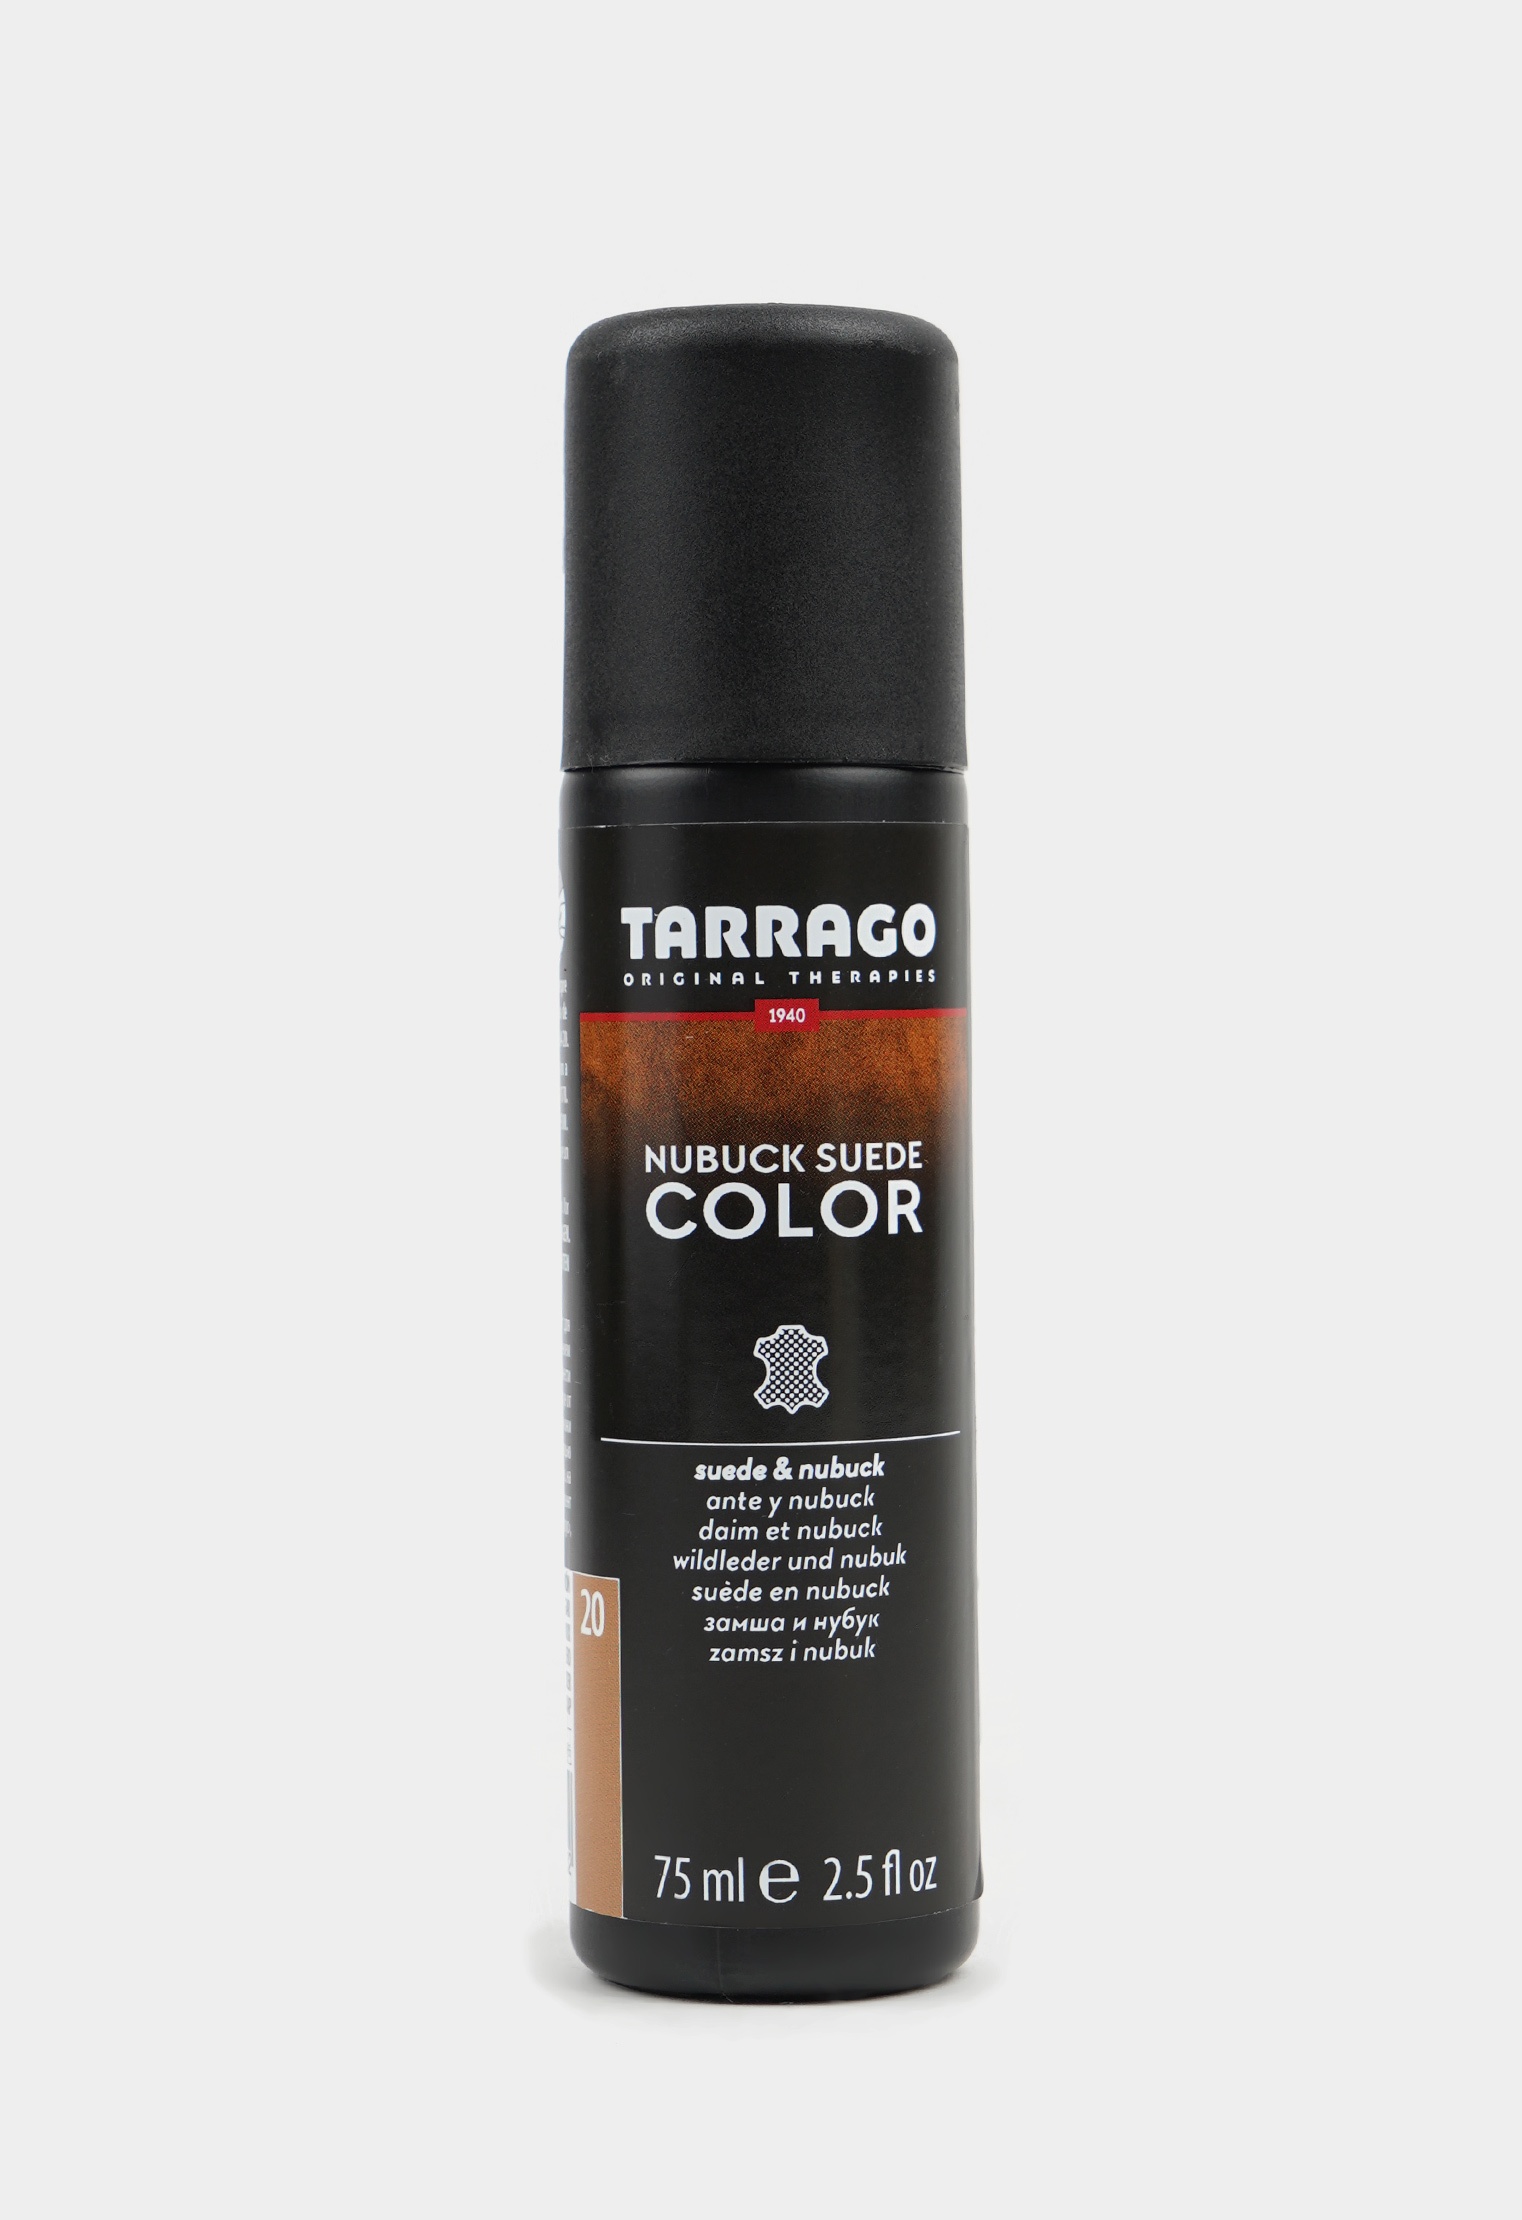 Аэрозоли для восстановления цвета 20-8905 TARRAGO - 020 Краситель для замши и нубука, NUBUCK COLOR, флакон, 75мл. (brown sugar) краска для обуви tarrago черная краска для замши tarrago nubuck color